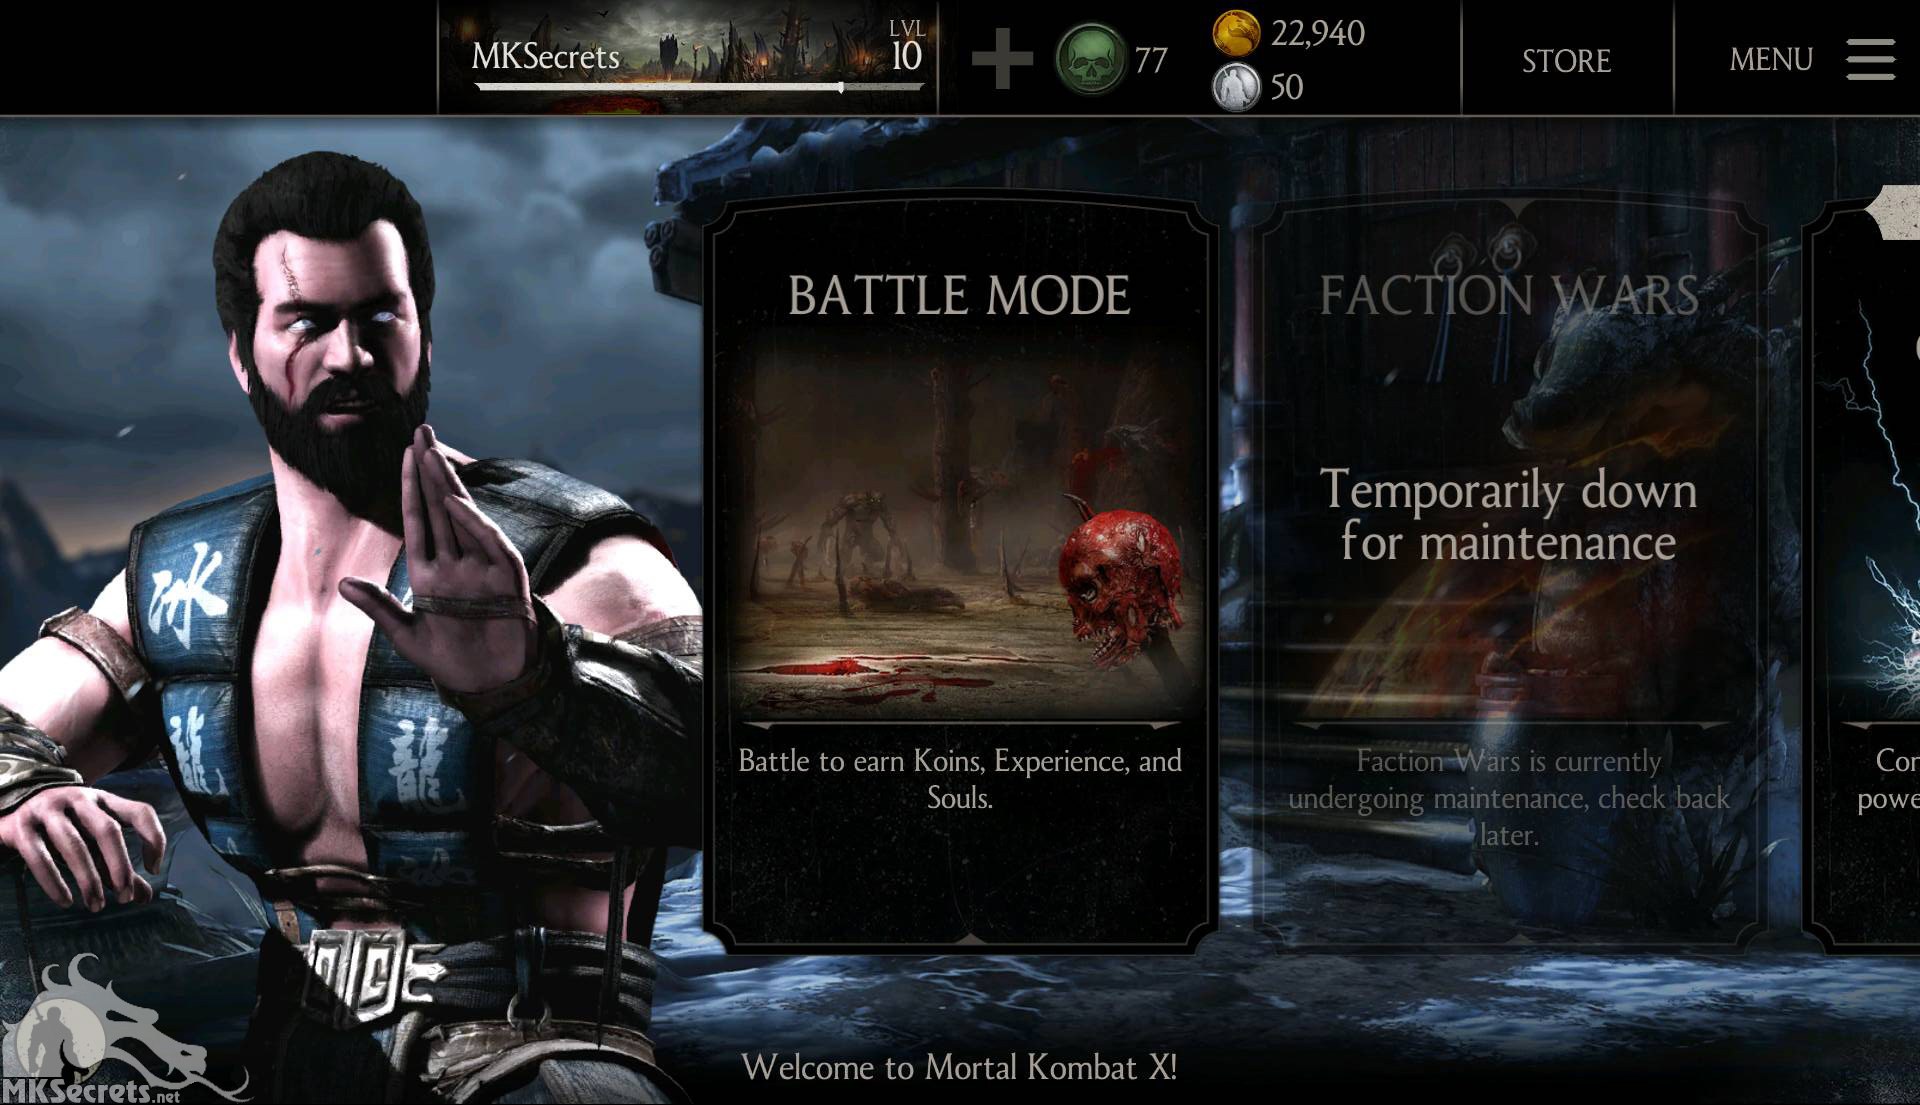 Мортал комбат мобайл 5.3 0. Меню мортал комбат 10. Mortal Kombat x mobile версия 1.1.0. МК Х мобайл. Mortal Kombat 10 главное меню.